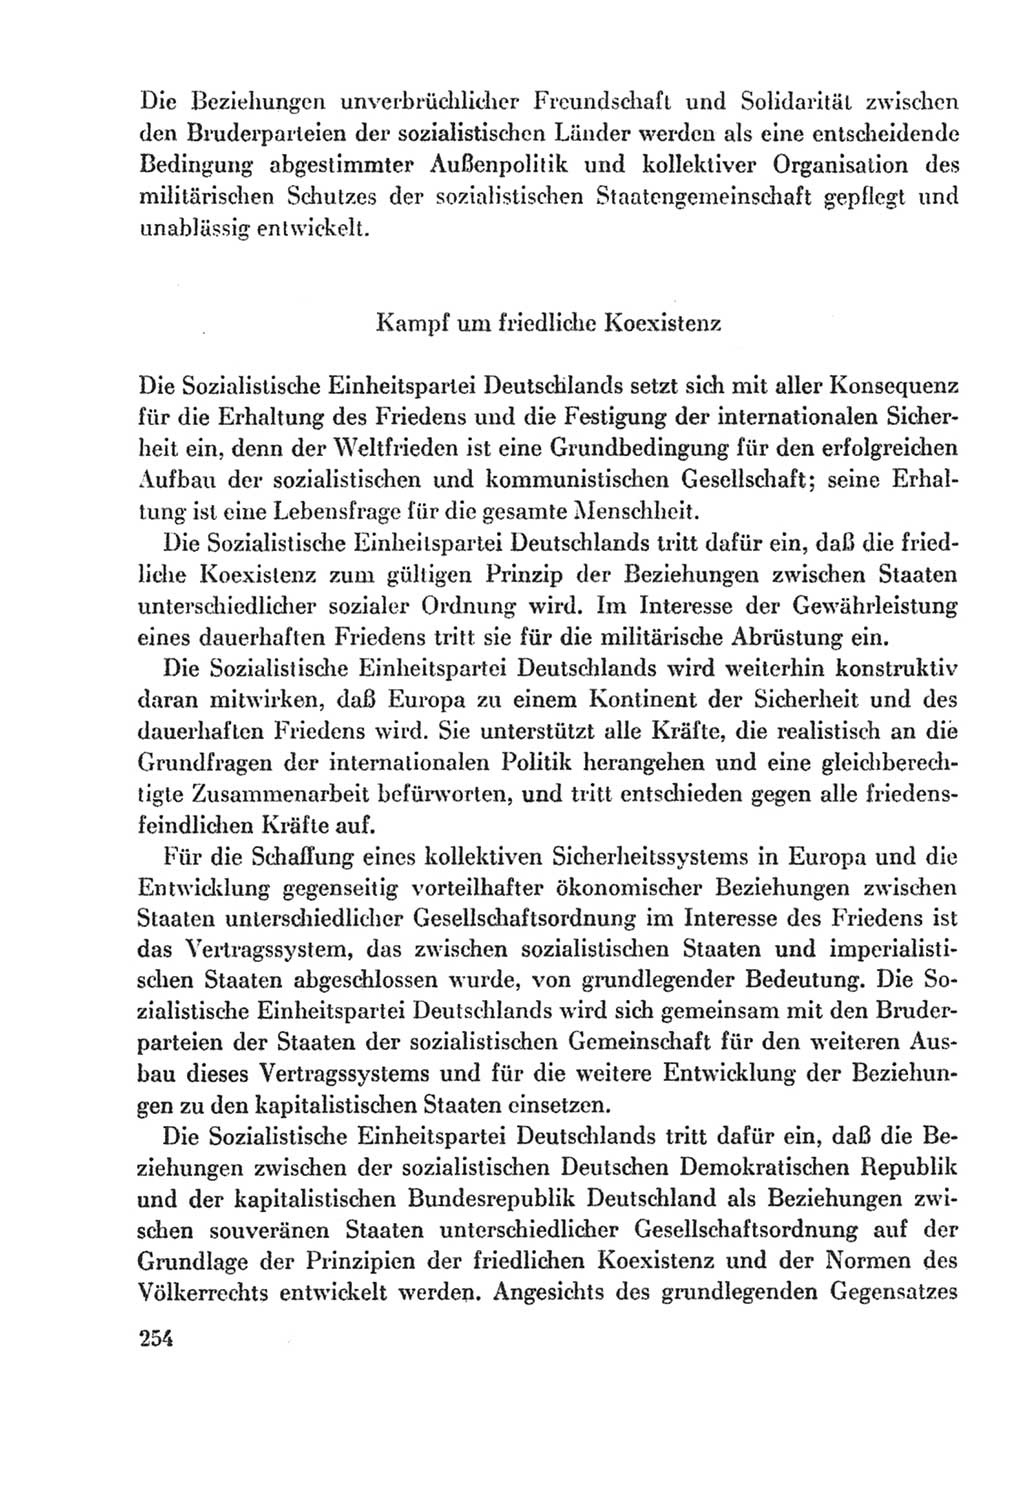 Protokoll der Verhandlungen des Ⅸ. Parteitages der Sozialistischen Einheitspartei Deutschlands (SED) [Deutsche Demokratische Republik (DDR)] 1976, Band 2, Seite 254 (Prot. Verh. Ⅸ. PT SED DDR 1976, Bd. 2, S. 254)